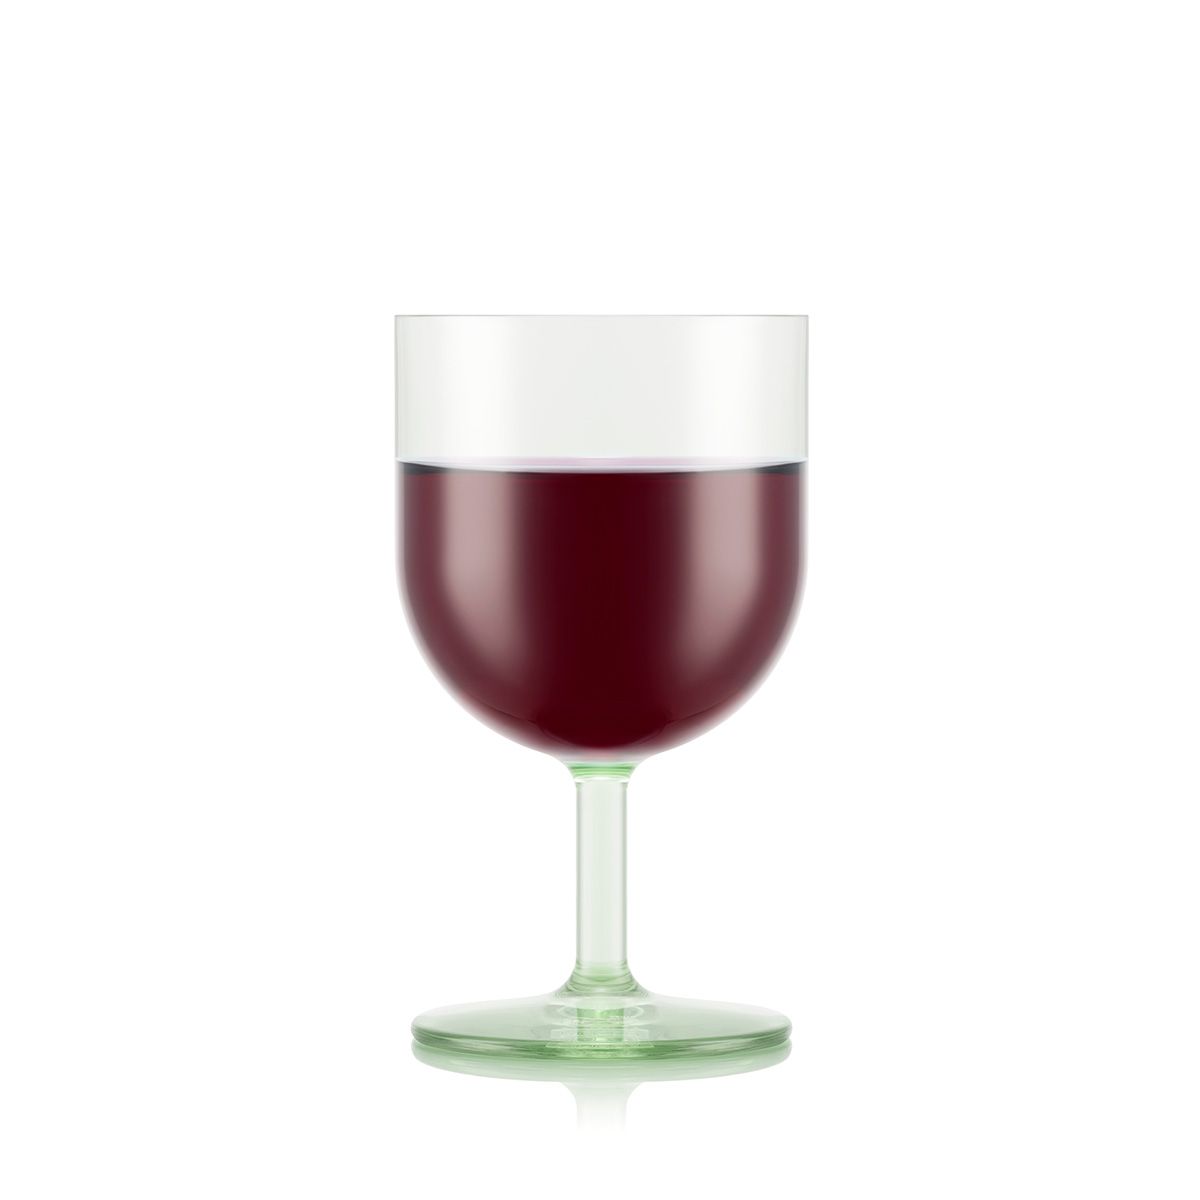 Bodum Oktett Red Vine Glasses 4 stk. 0,25 L, pistache